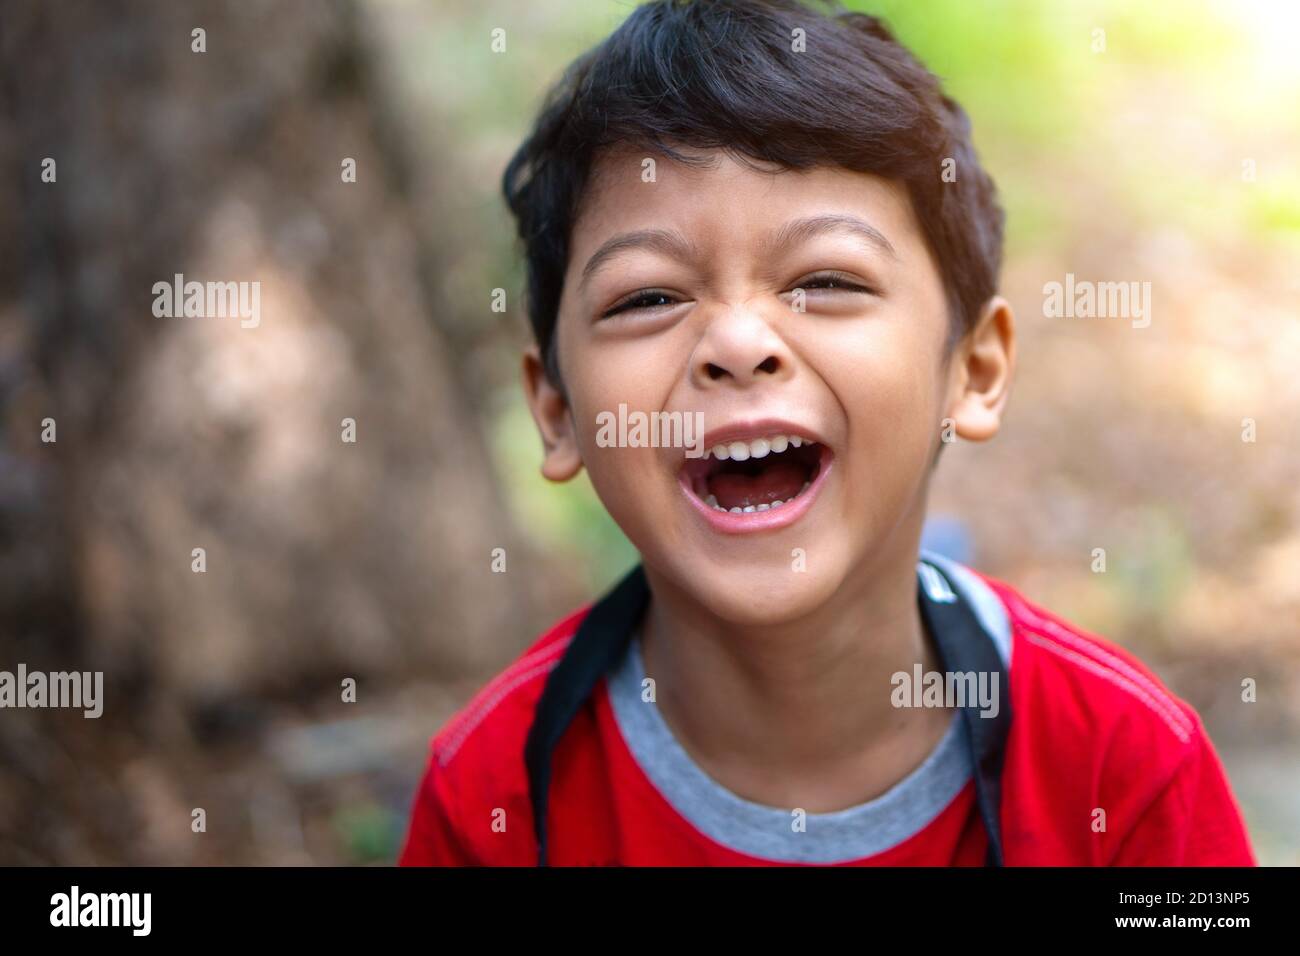 Ein Junge in einem roten Hemd lachte fröhlich Stockfoto